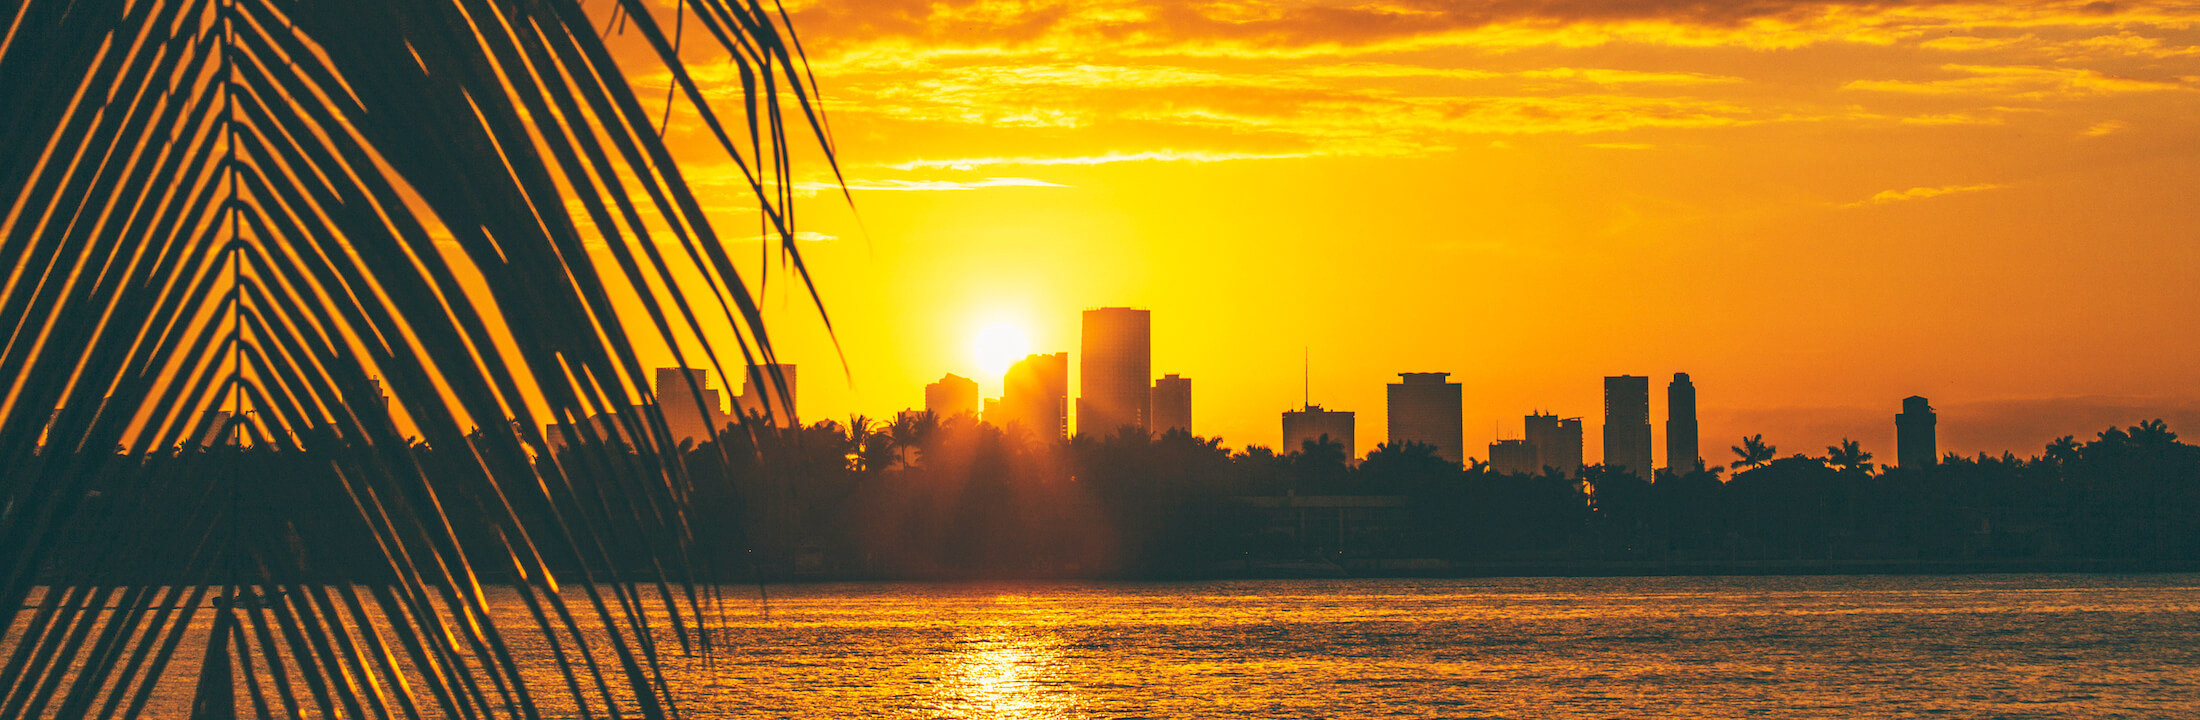 Miami skyline at sunset